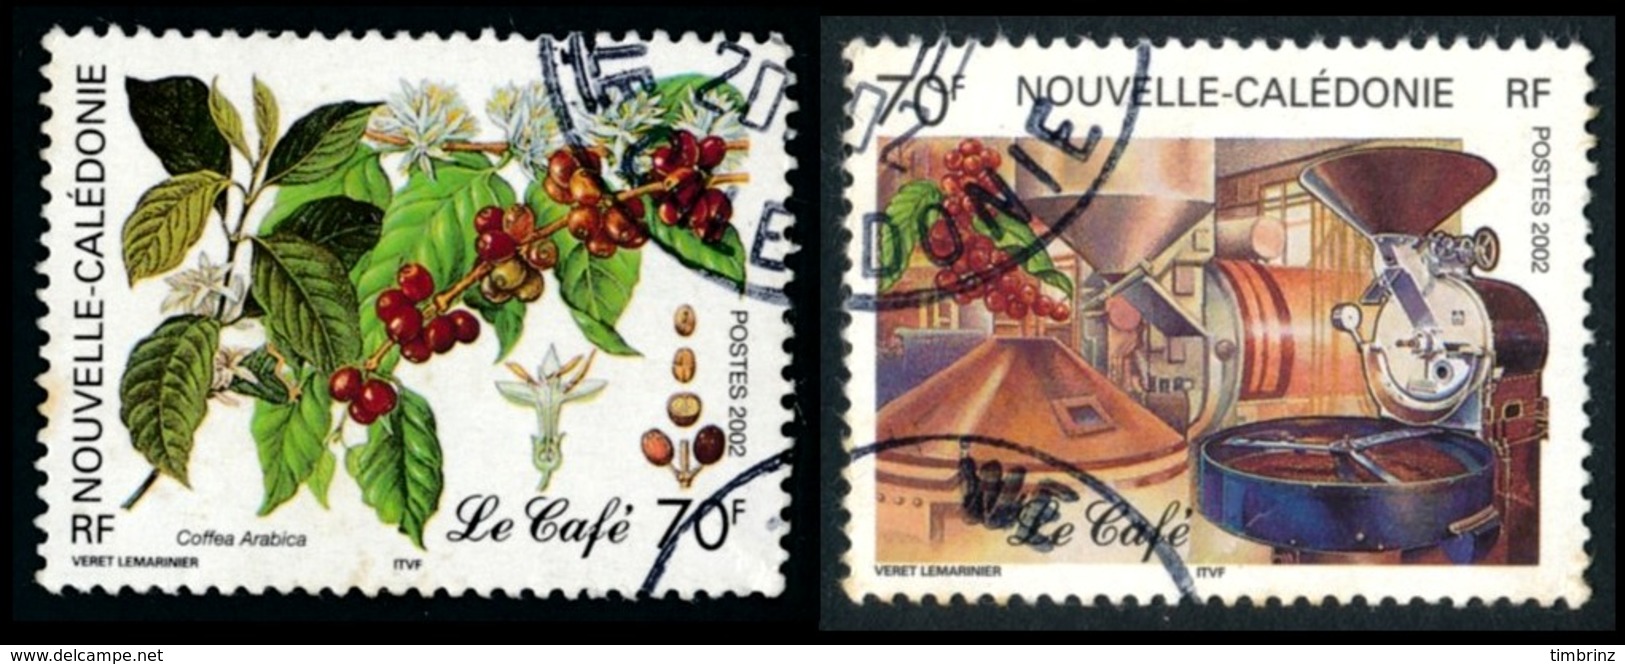 NOUV.-CALEDONIE 2002 - Yv. 869 Et 870 Obl.   Cote= 2,40 EUR - Caféier & Usine, Torréfacteur (2 Val.)  ..Réf.NCE24540 - Usados